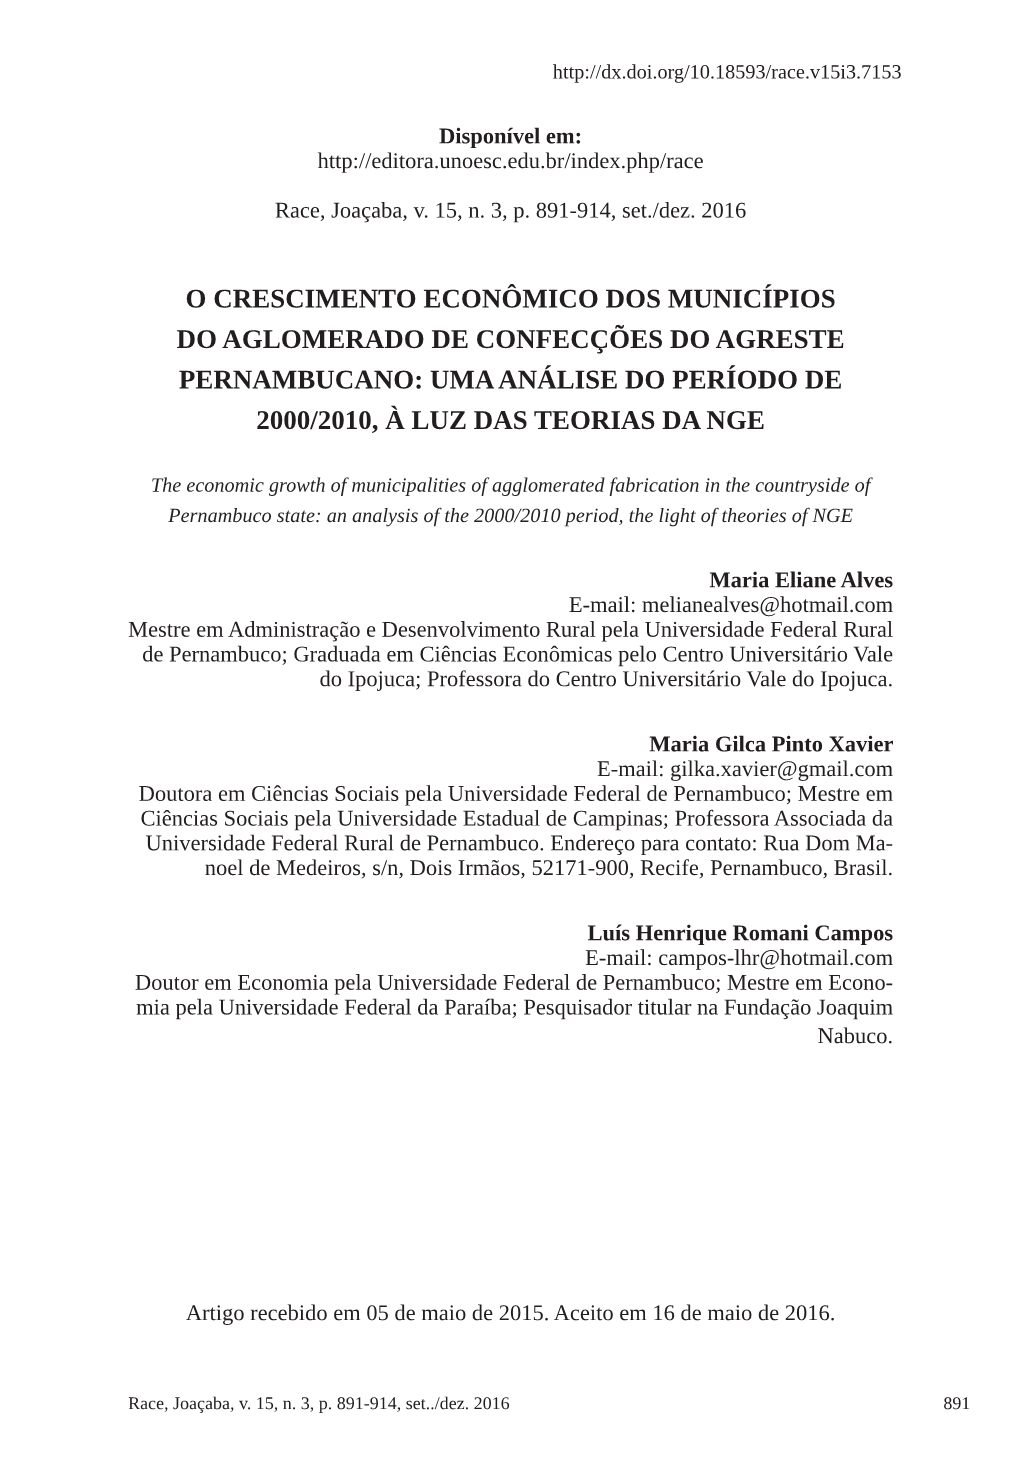 O Crescimento Econômico Dos Municípios Do Aglomerado De Confecções Do Agreste Pernambucano: Uma Análise Do Período De 2000/2010, À Luz Das Teorias Da Nge